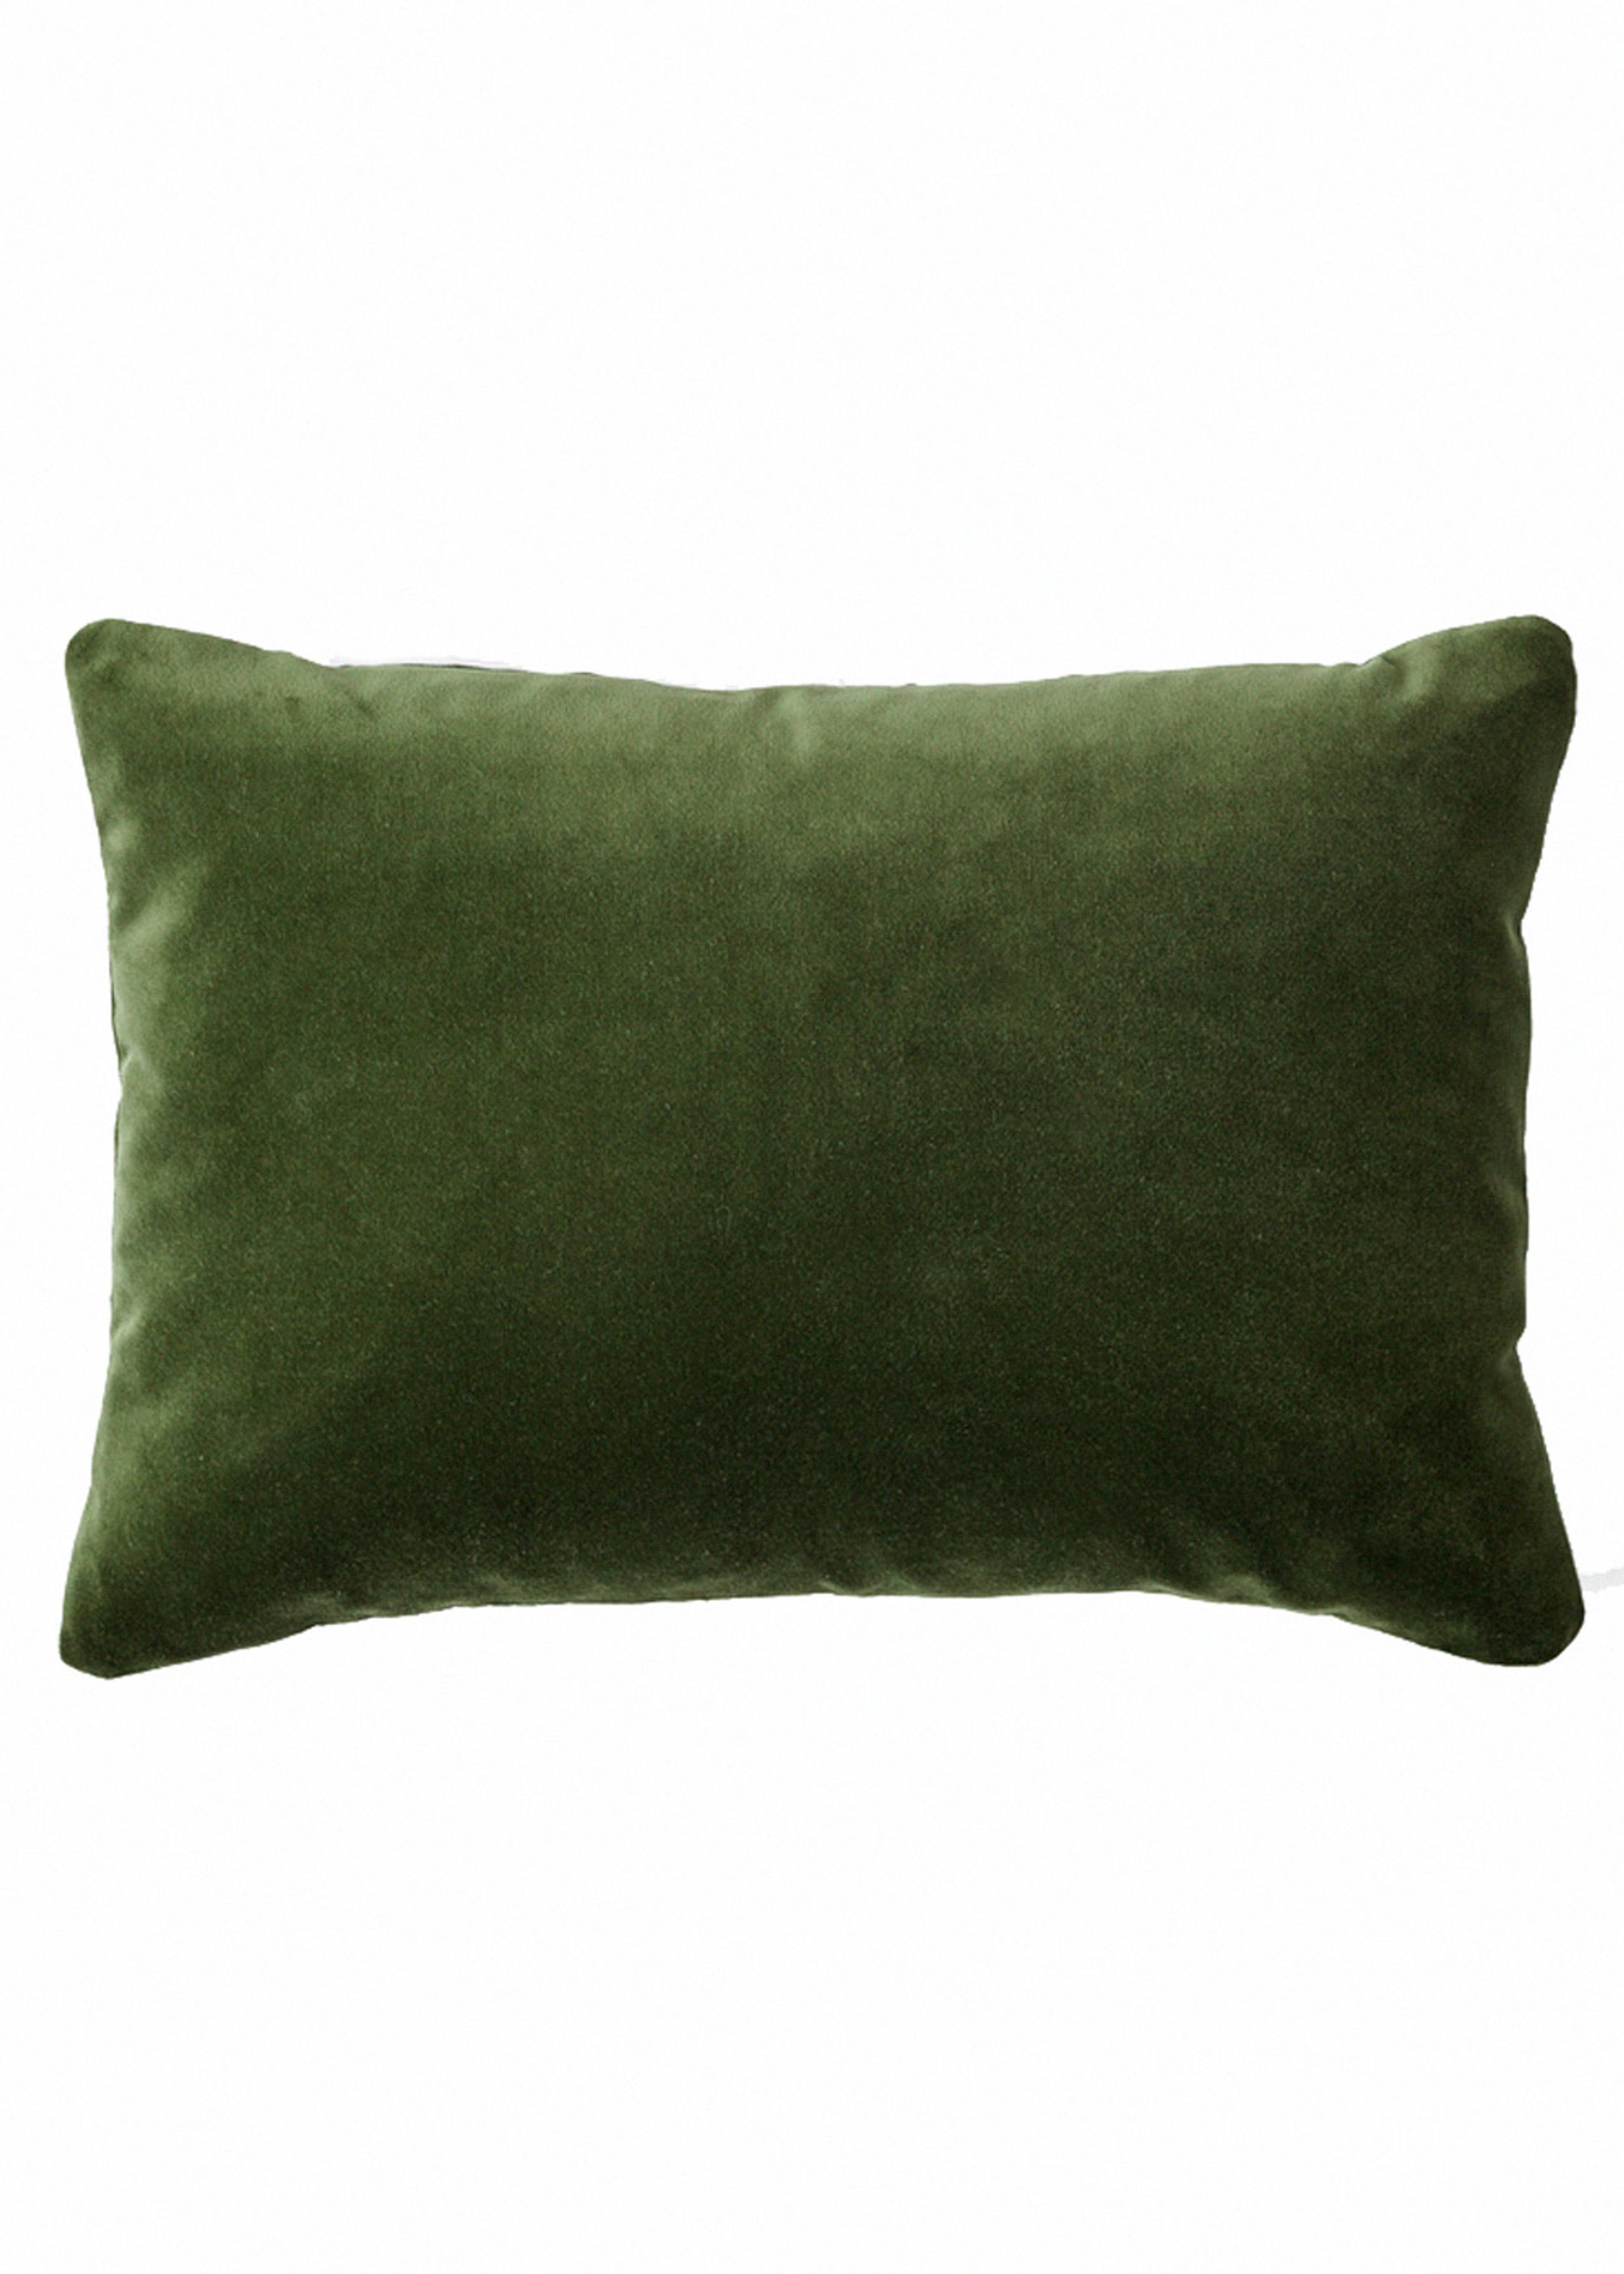 &tradition - Pillow - Develius EV5-7 by Edward van Vliet - Small Pillow - EV7